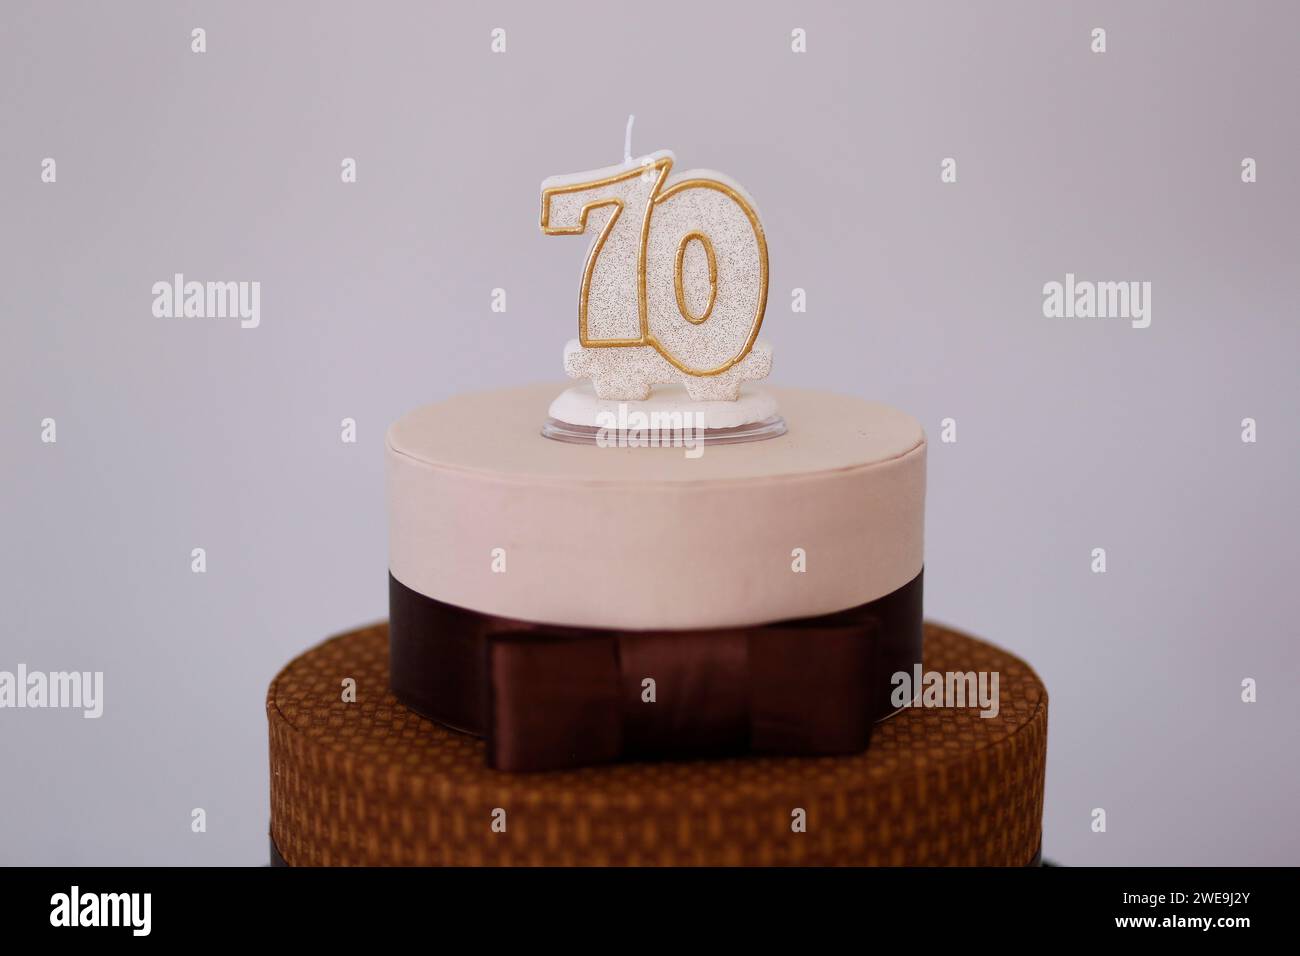 détail du nombre soixante-dix sur le dessus du gâteau d'anniversaire, 70 anniversaire, gâteau blanc, bougie de gâteau d'anniversaire de 70 ans Banque D'Images